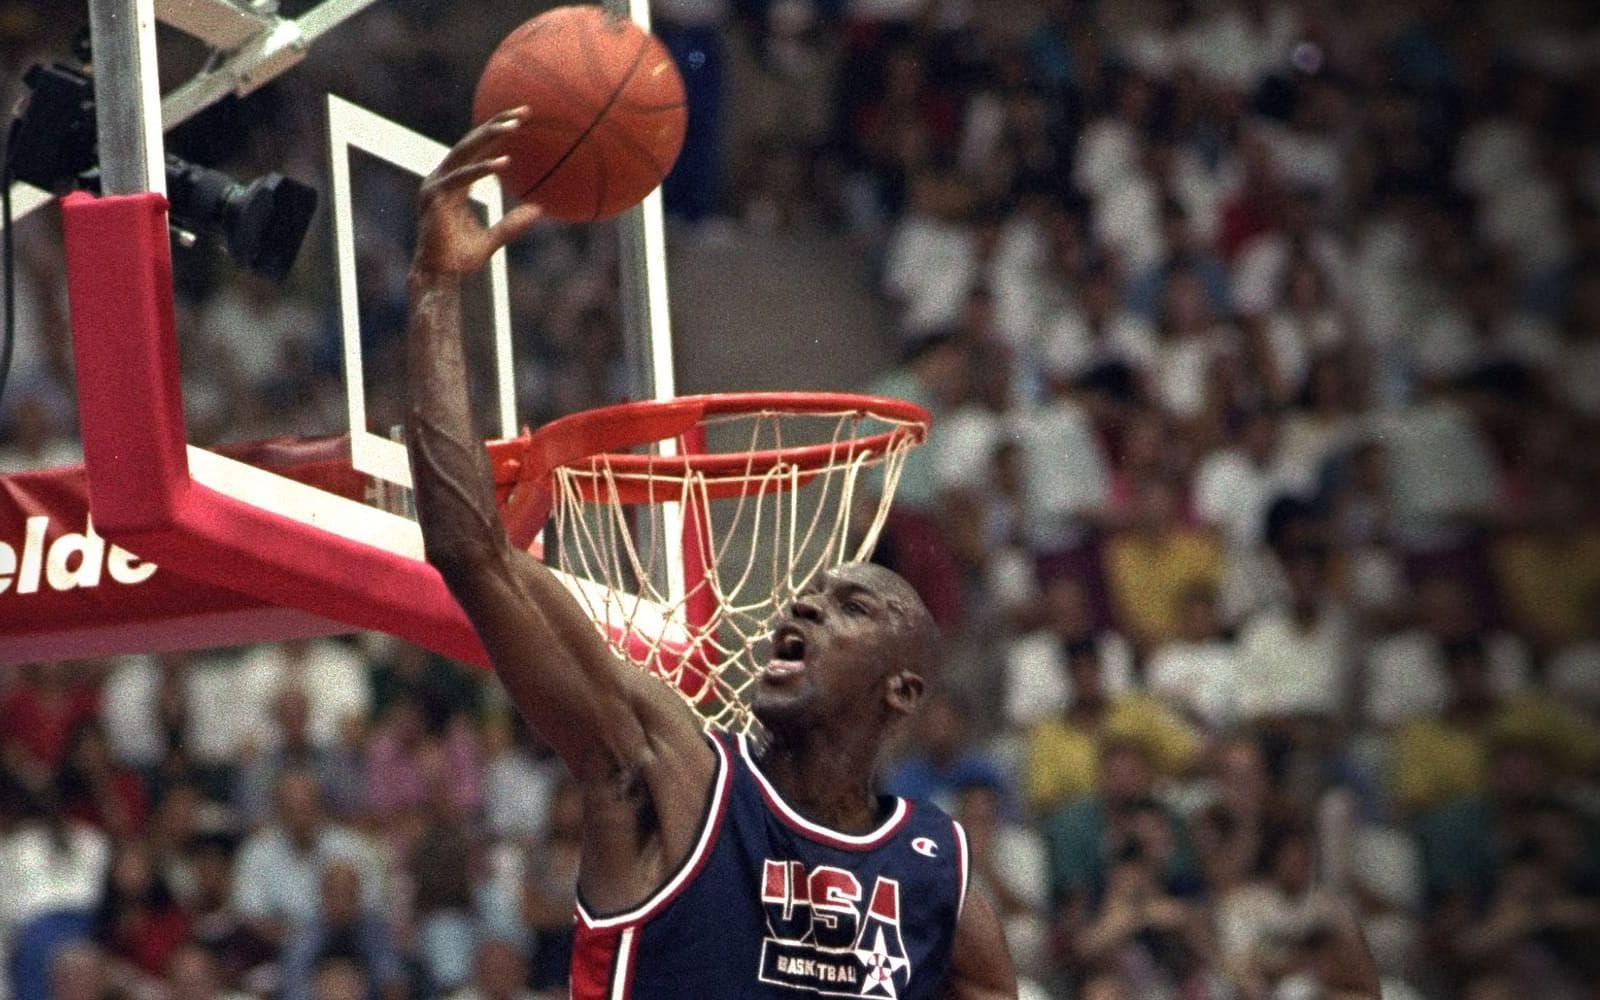 Världens genom tiderna bästa basketspelare, Michael Jordan, var hela spelens största stjärna. Foto: TT